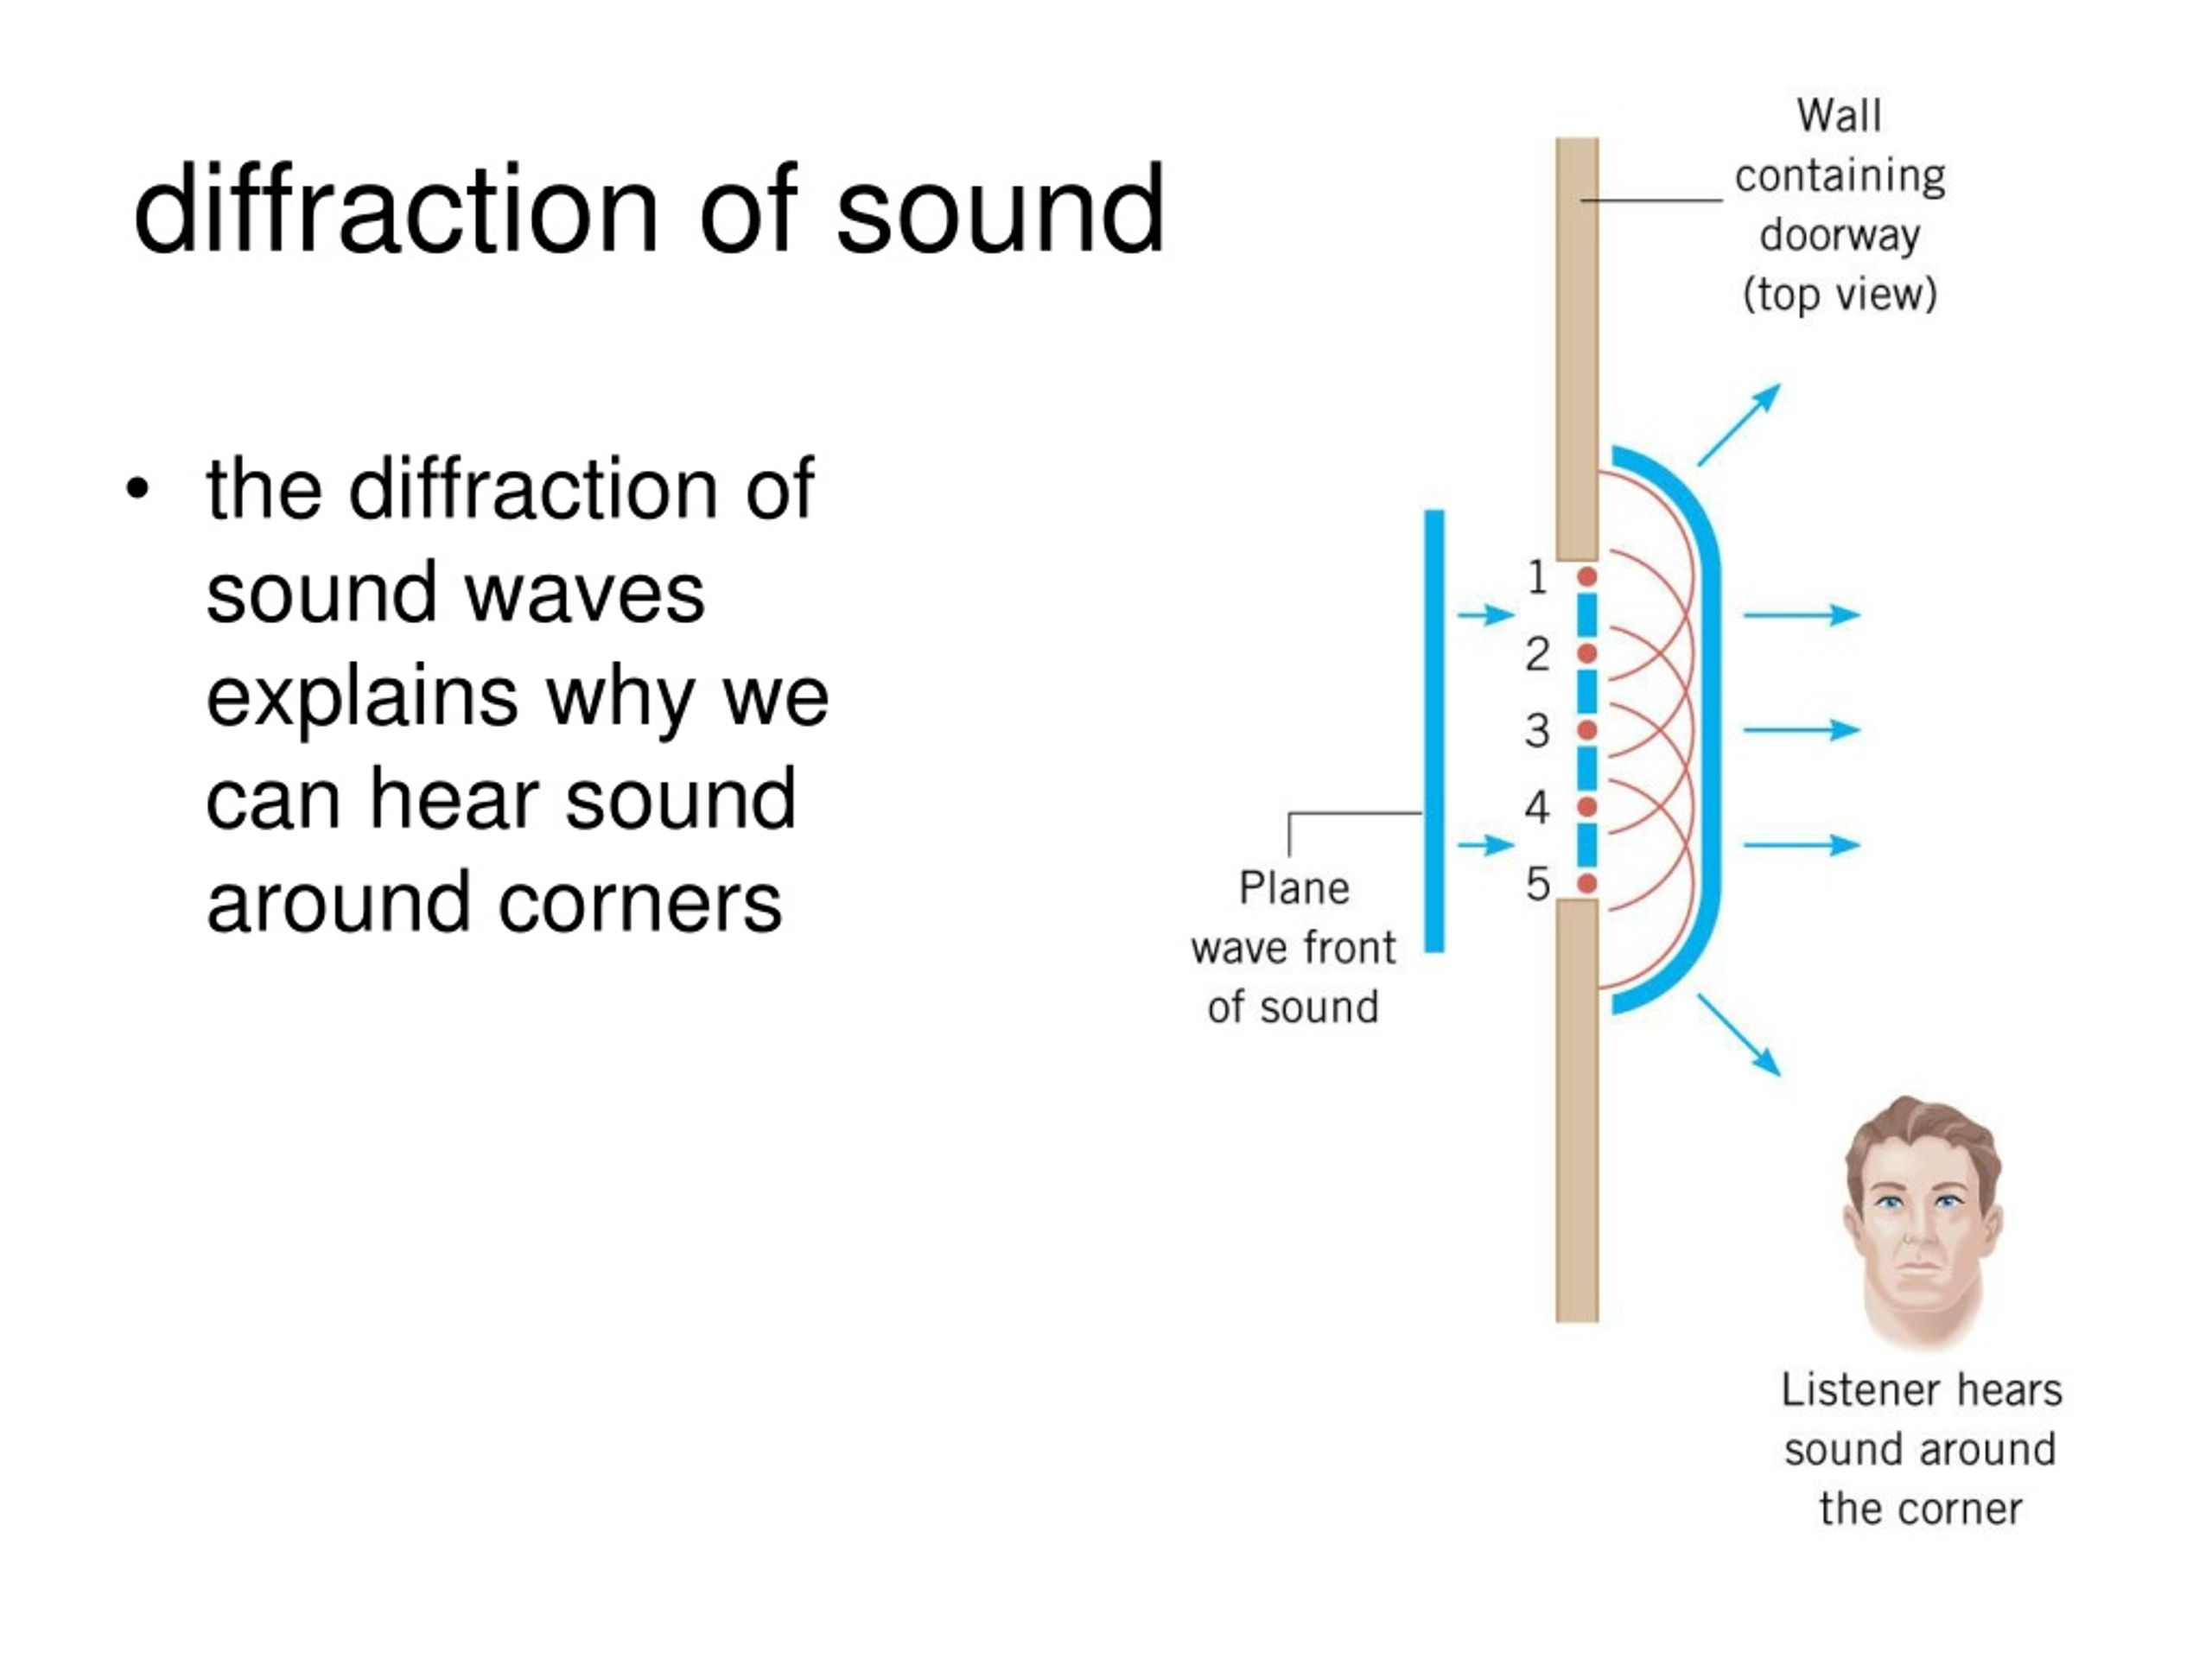 sound waves diffraction around corner